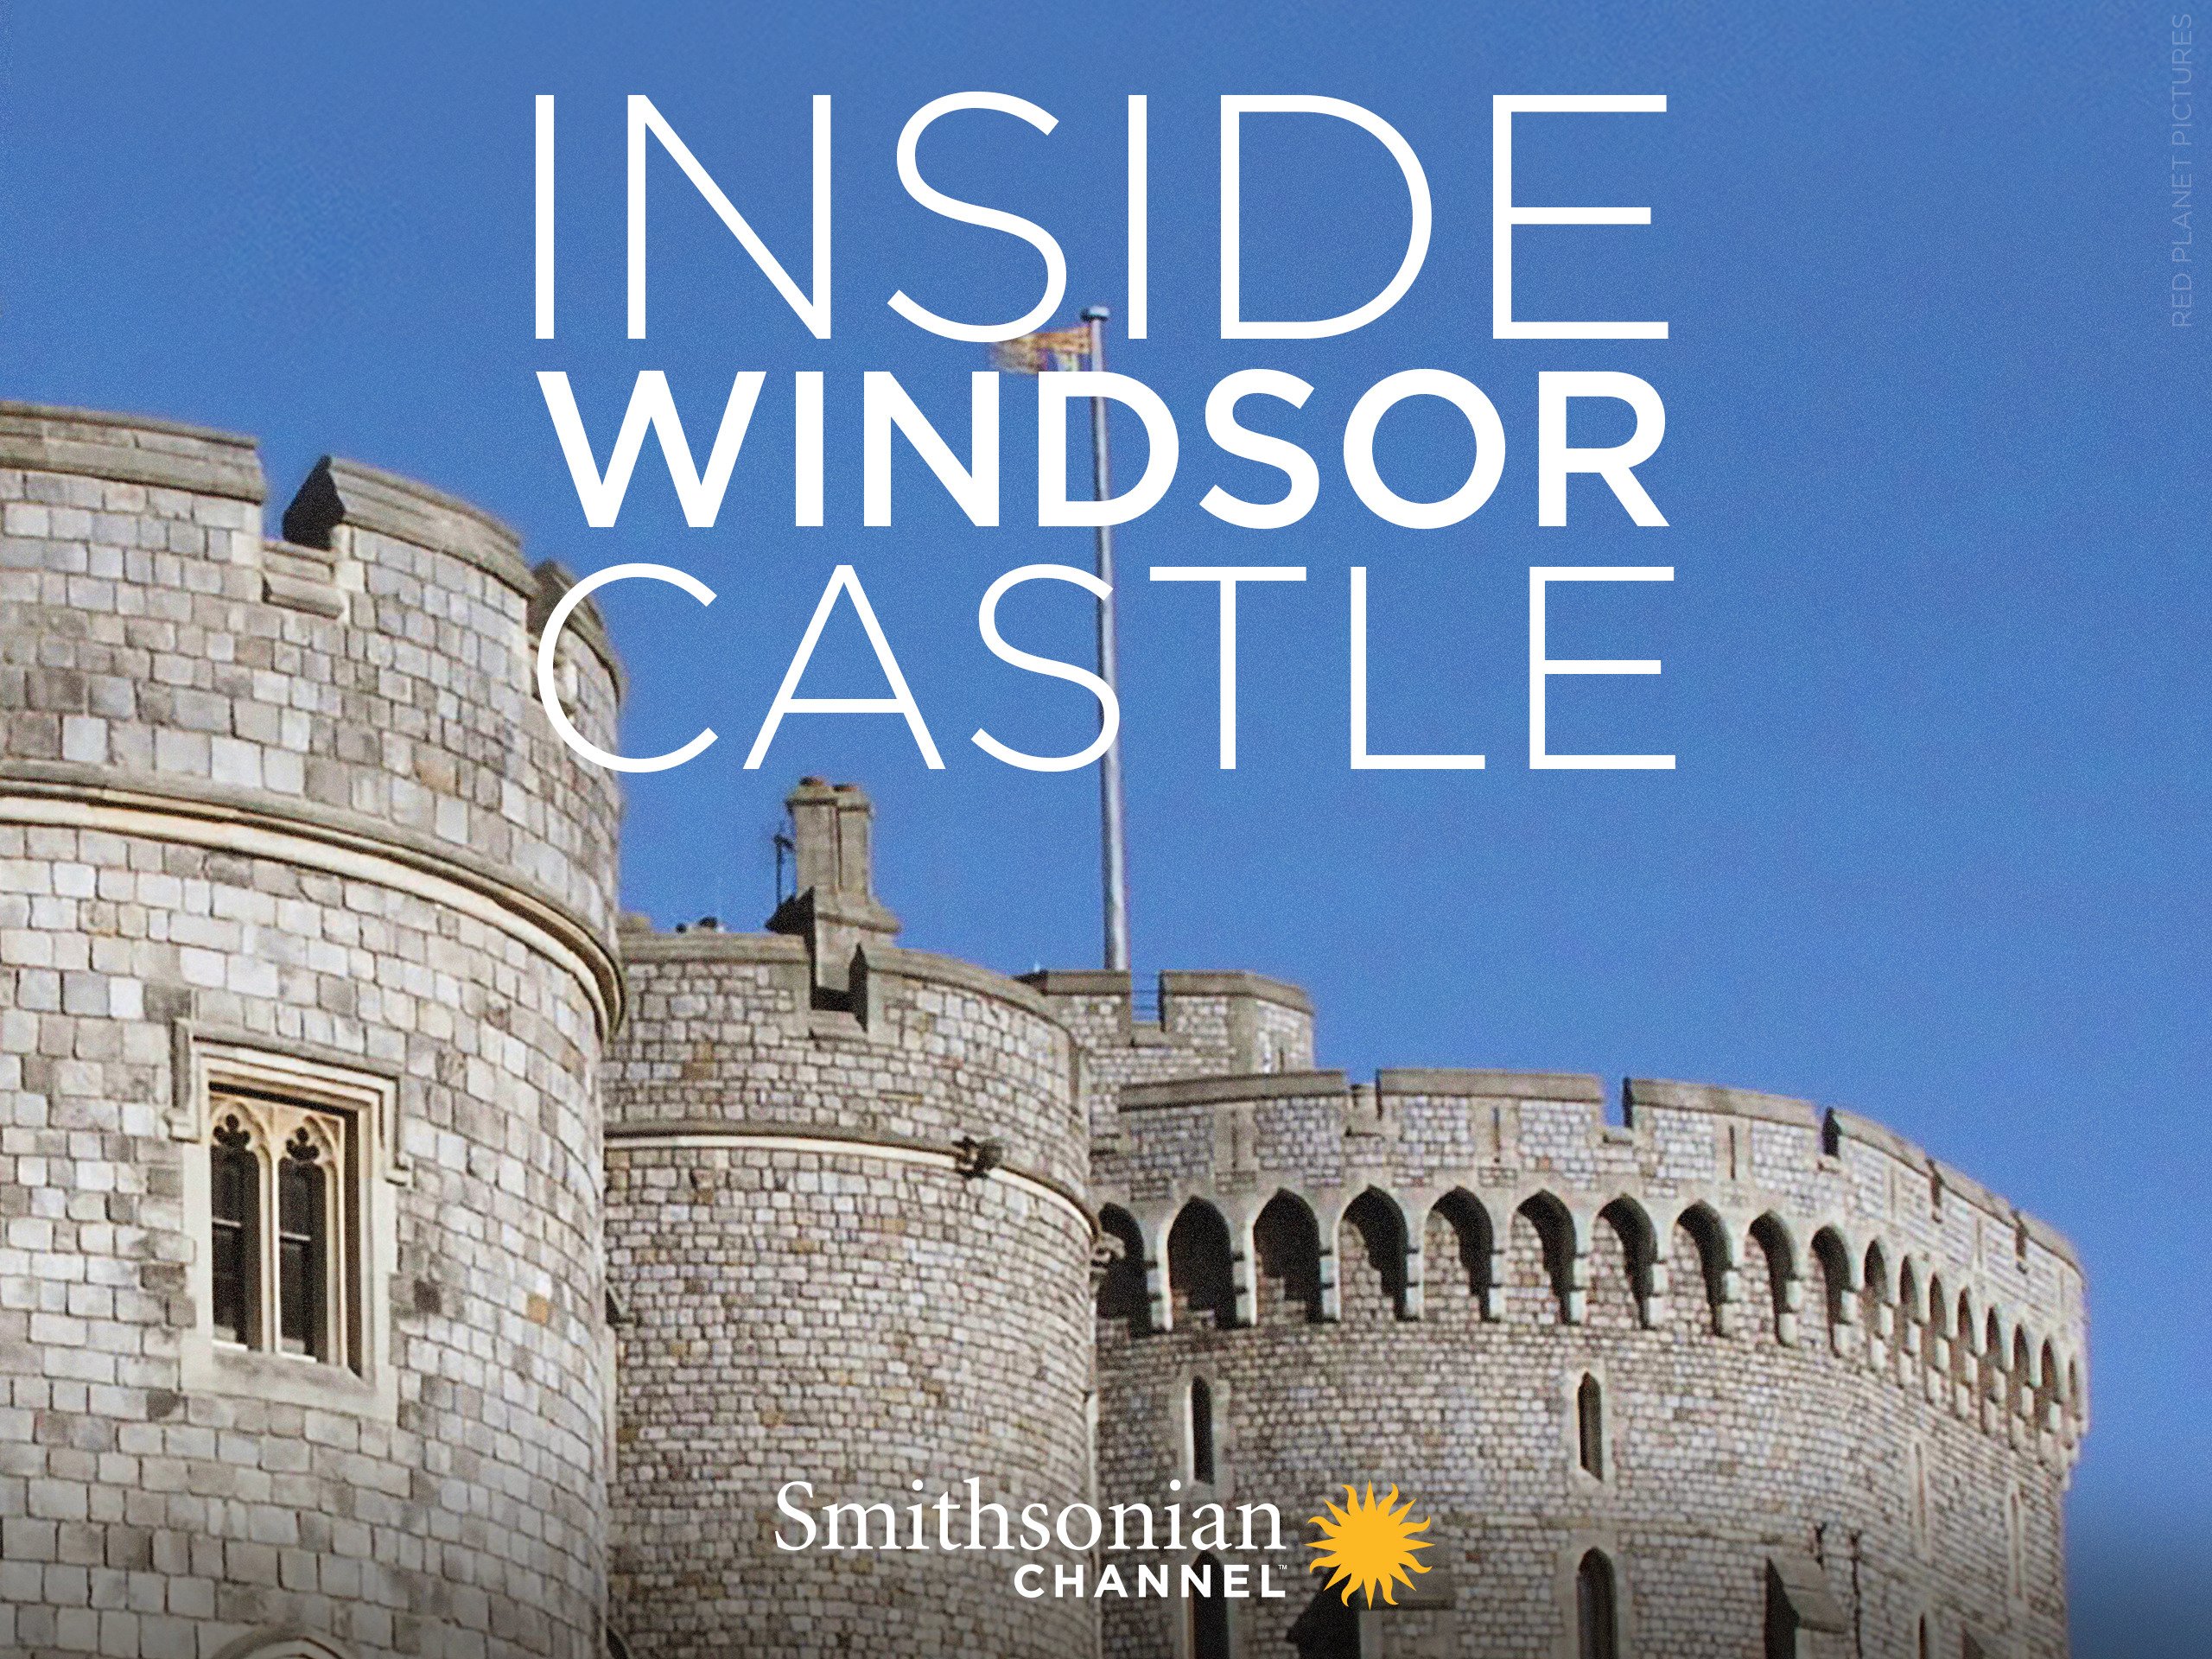 Amazon.com: Inside Windsor Castle - Season 1: Smithsonian Channel ...